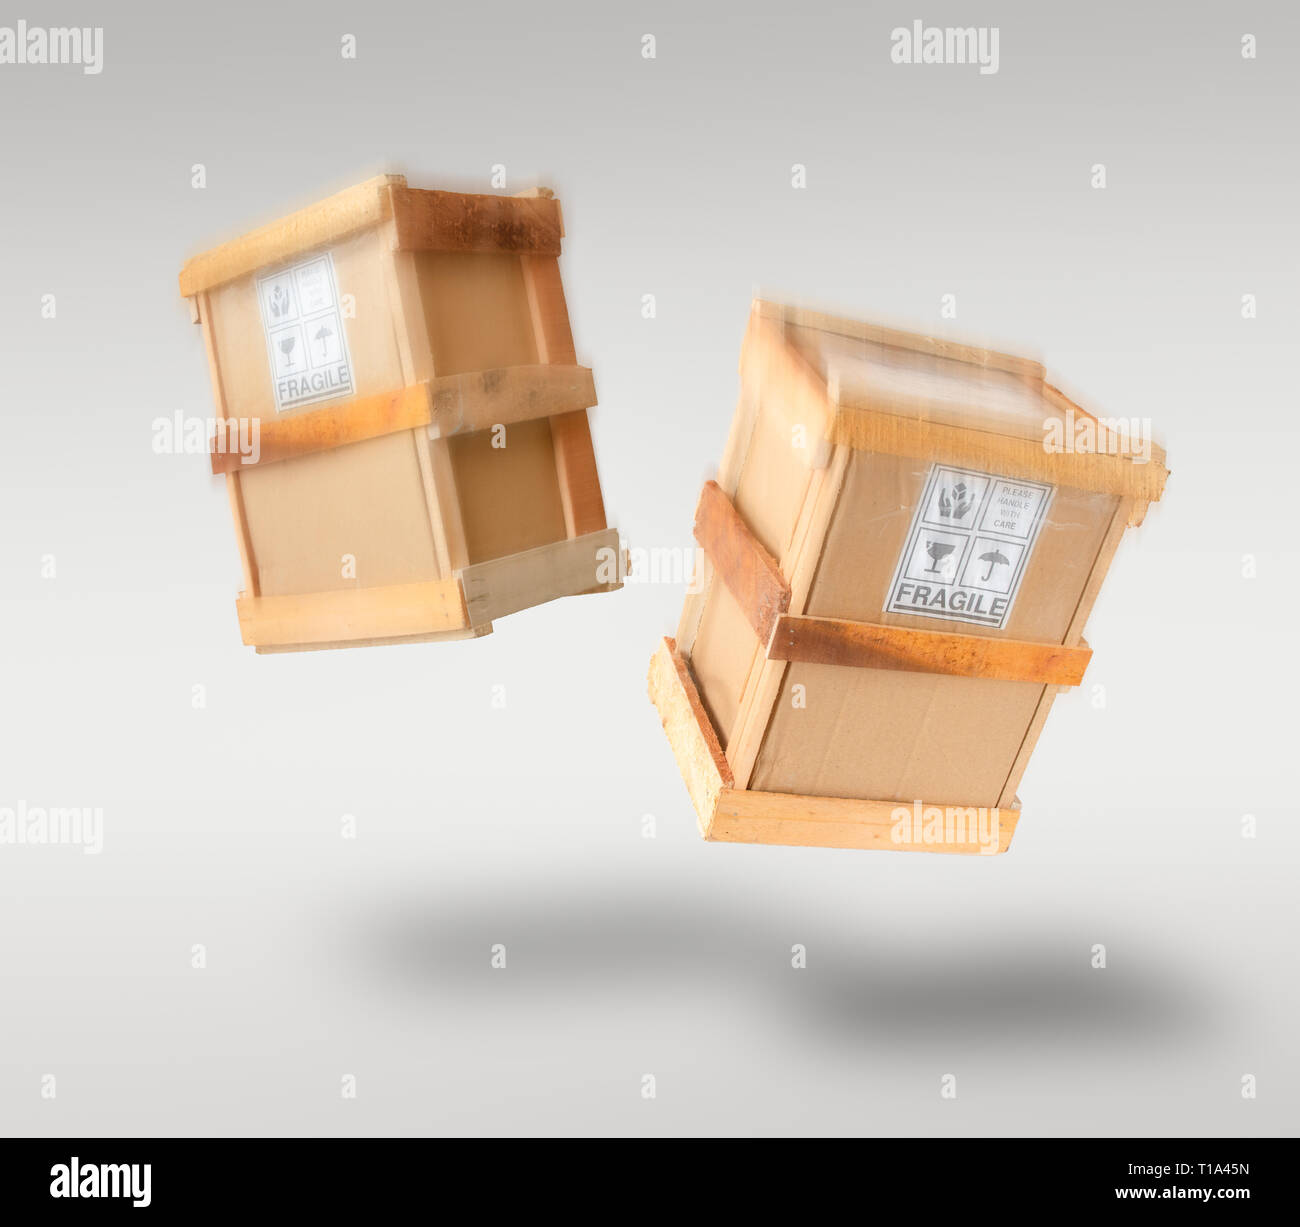 Fragile Boxen frei fallender durch die Luft - Logistik & e-commerce Versand/Verpackung Konzept Bild. Stockfoto